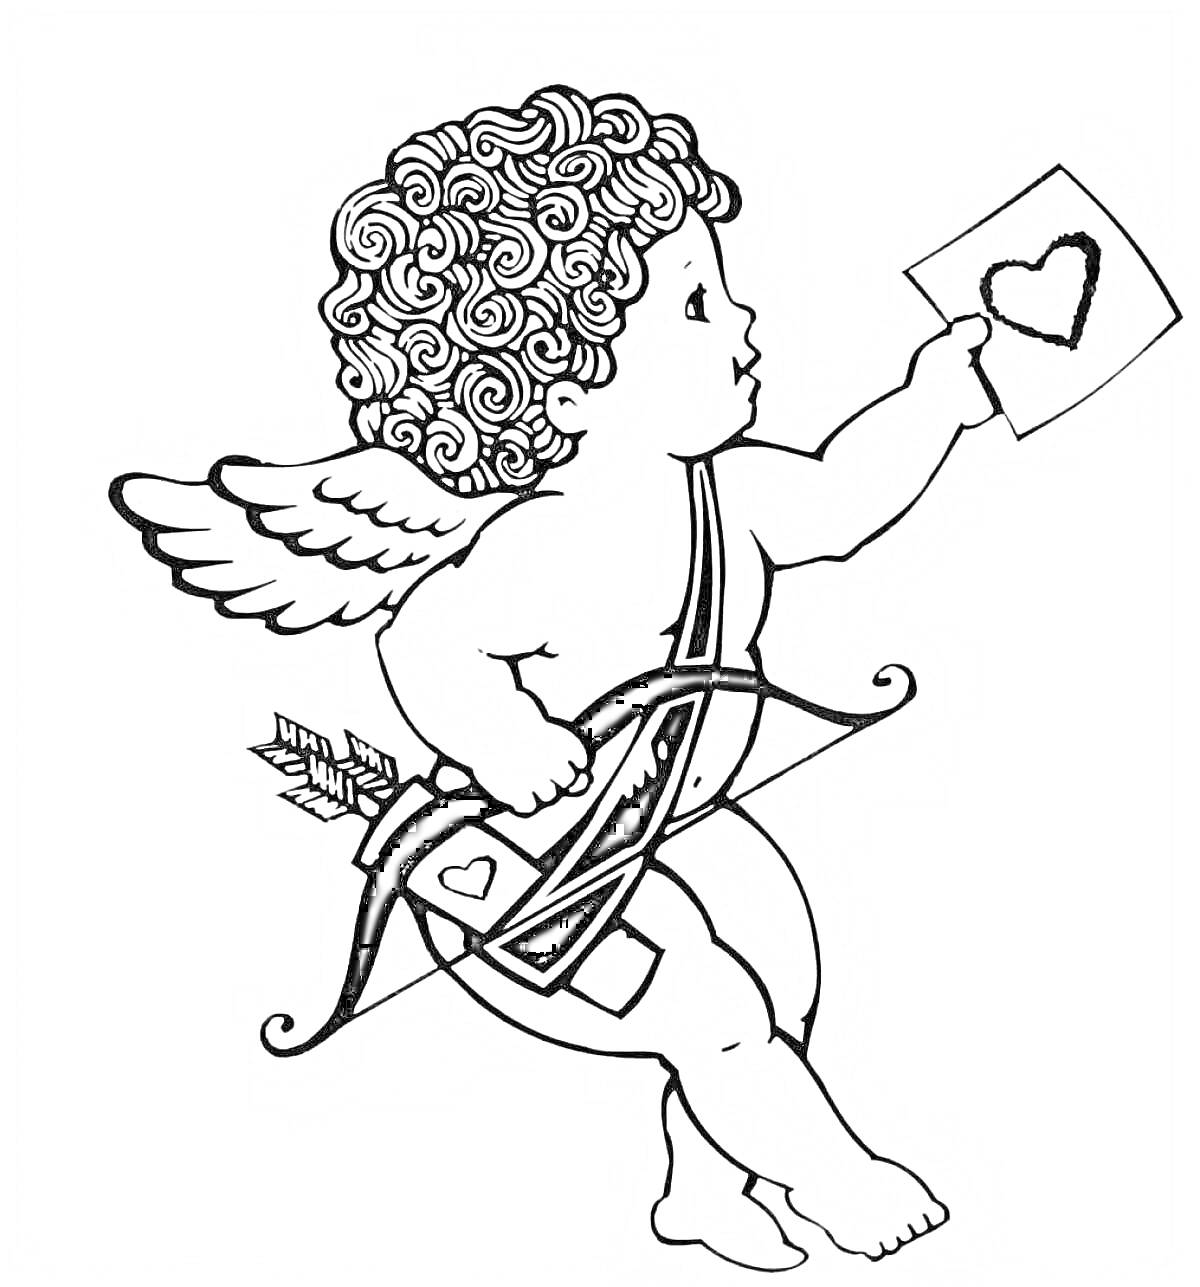 Раскраска Купидон с крыльями, письмом с сердцем, луком и стрелой